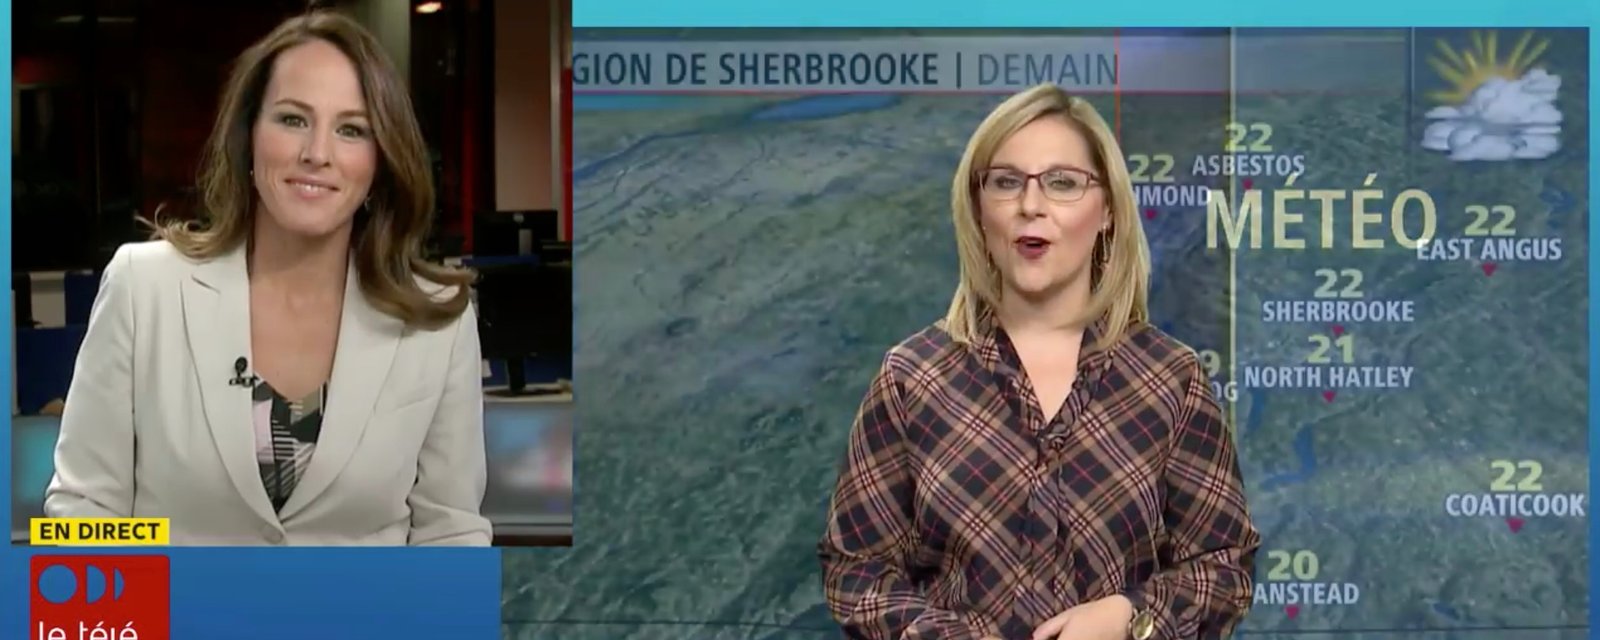 Une journaliste québécoise perd le contrôle en direct à la télévision